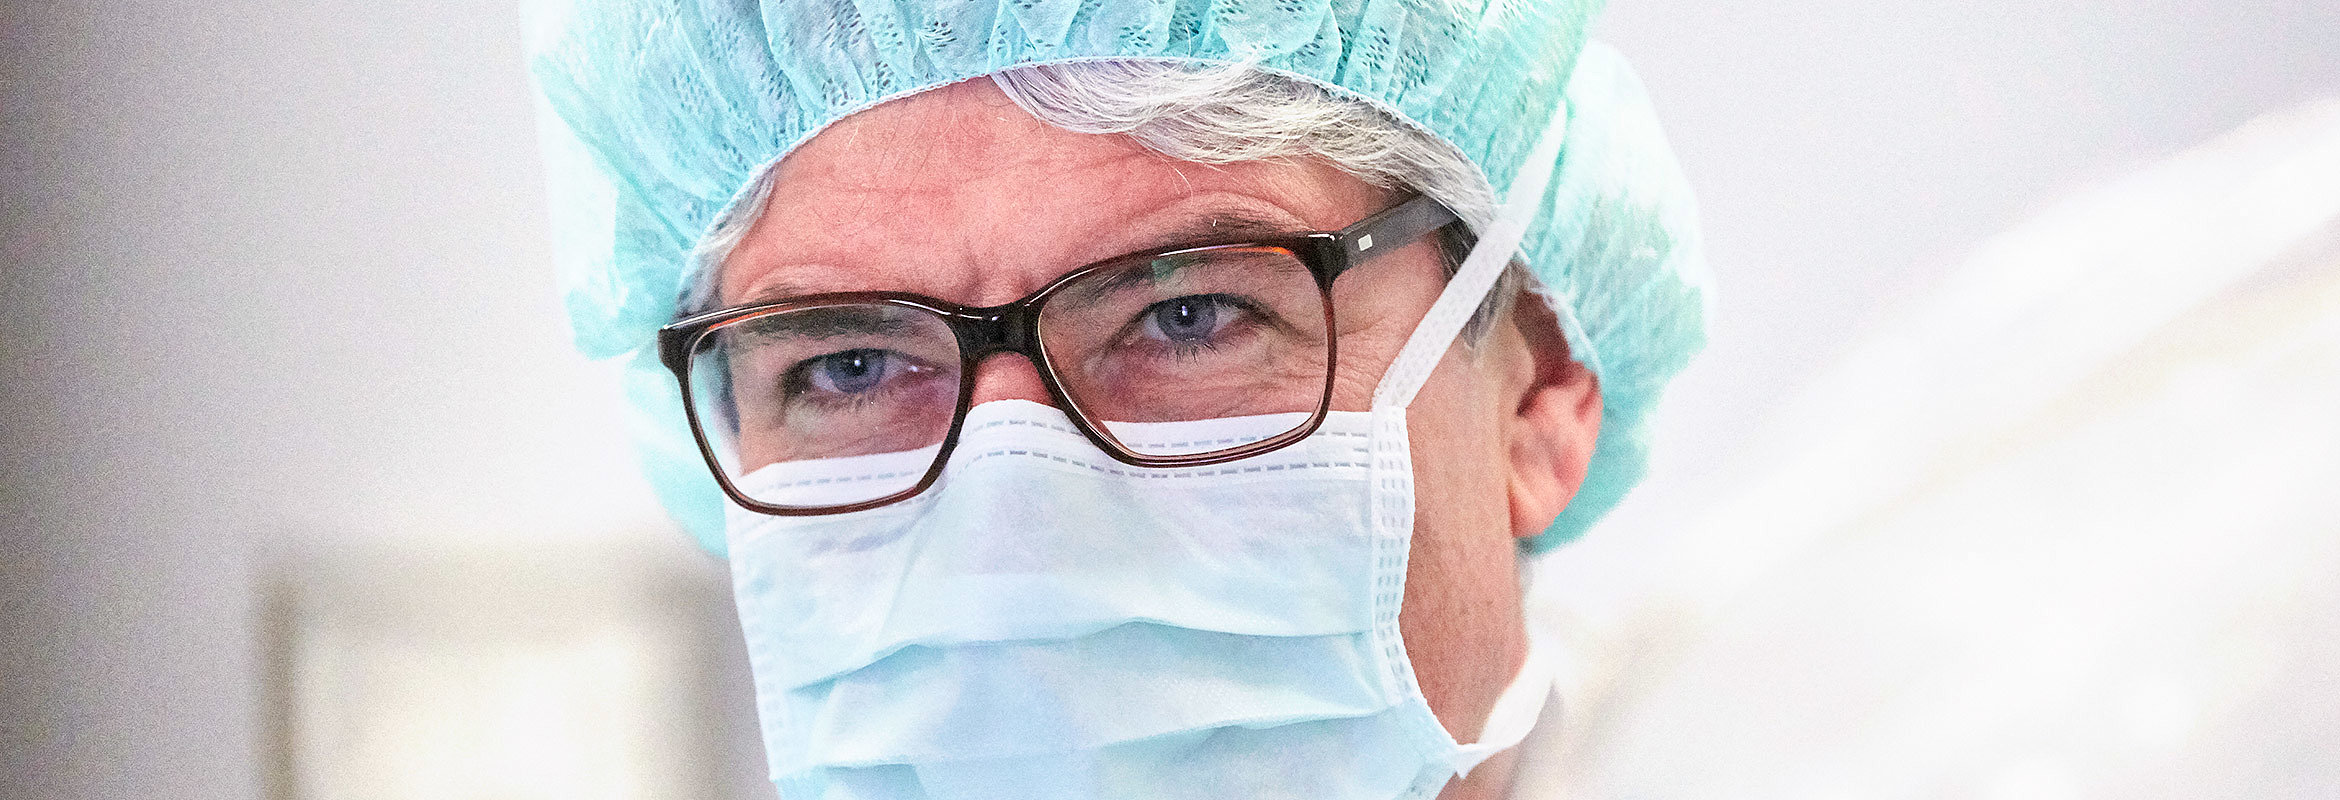 Prof. Dr. med. Burghard Schumacher, Chefarzt der Klinik für Innere Medizin 2 in Kaiserslautern, mit Maske 